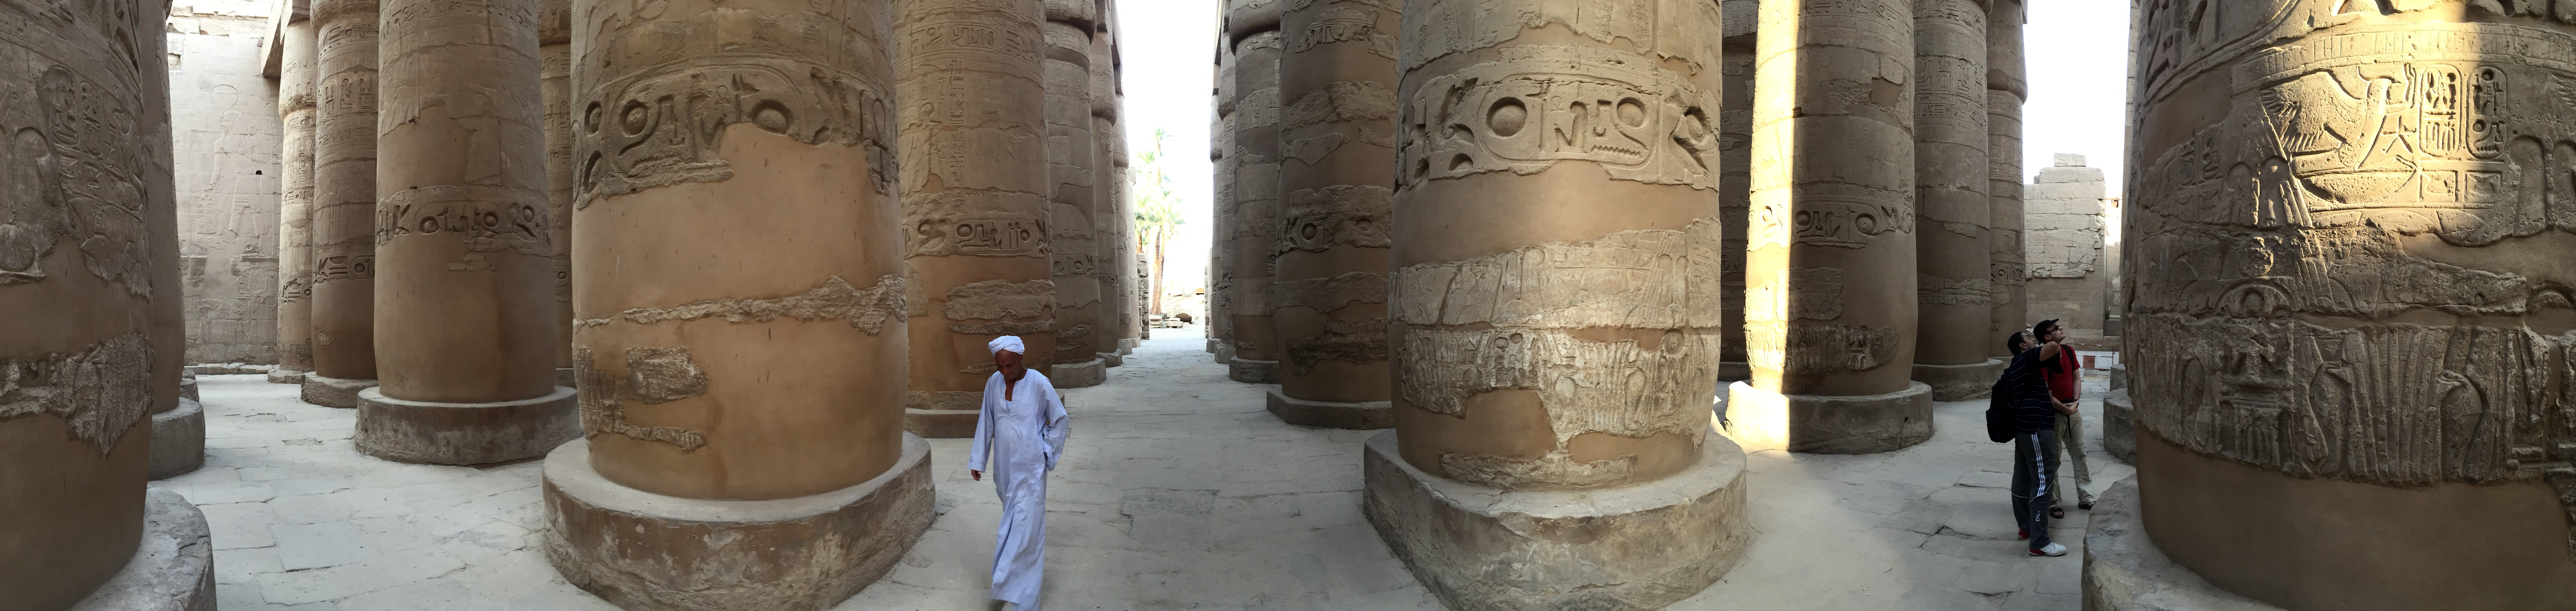 Karnak-Tempel Pano Säulenhalle 1